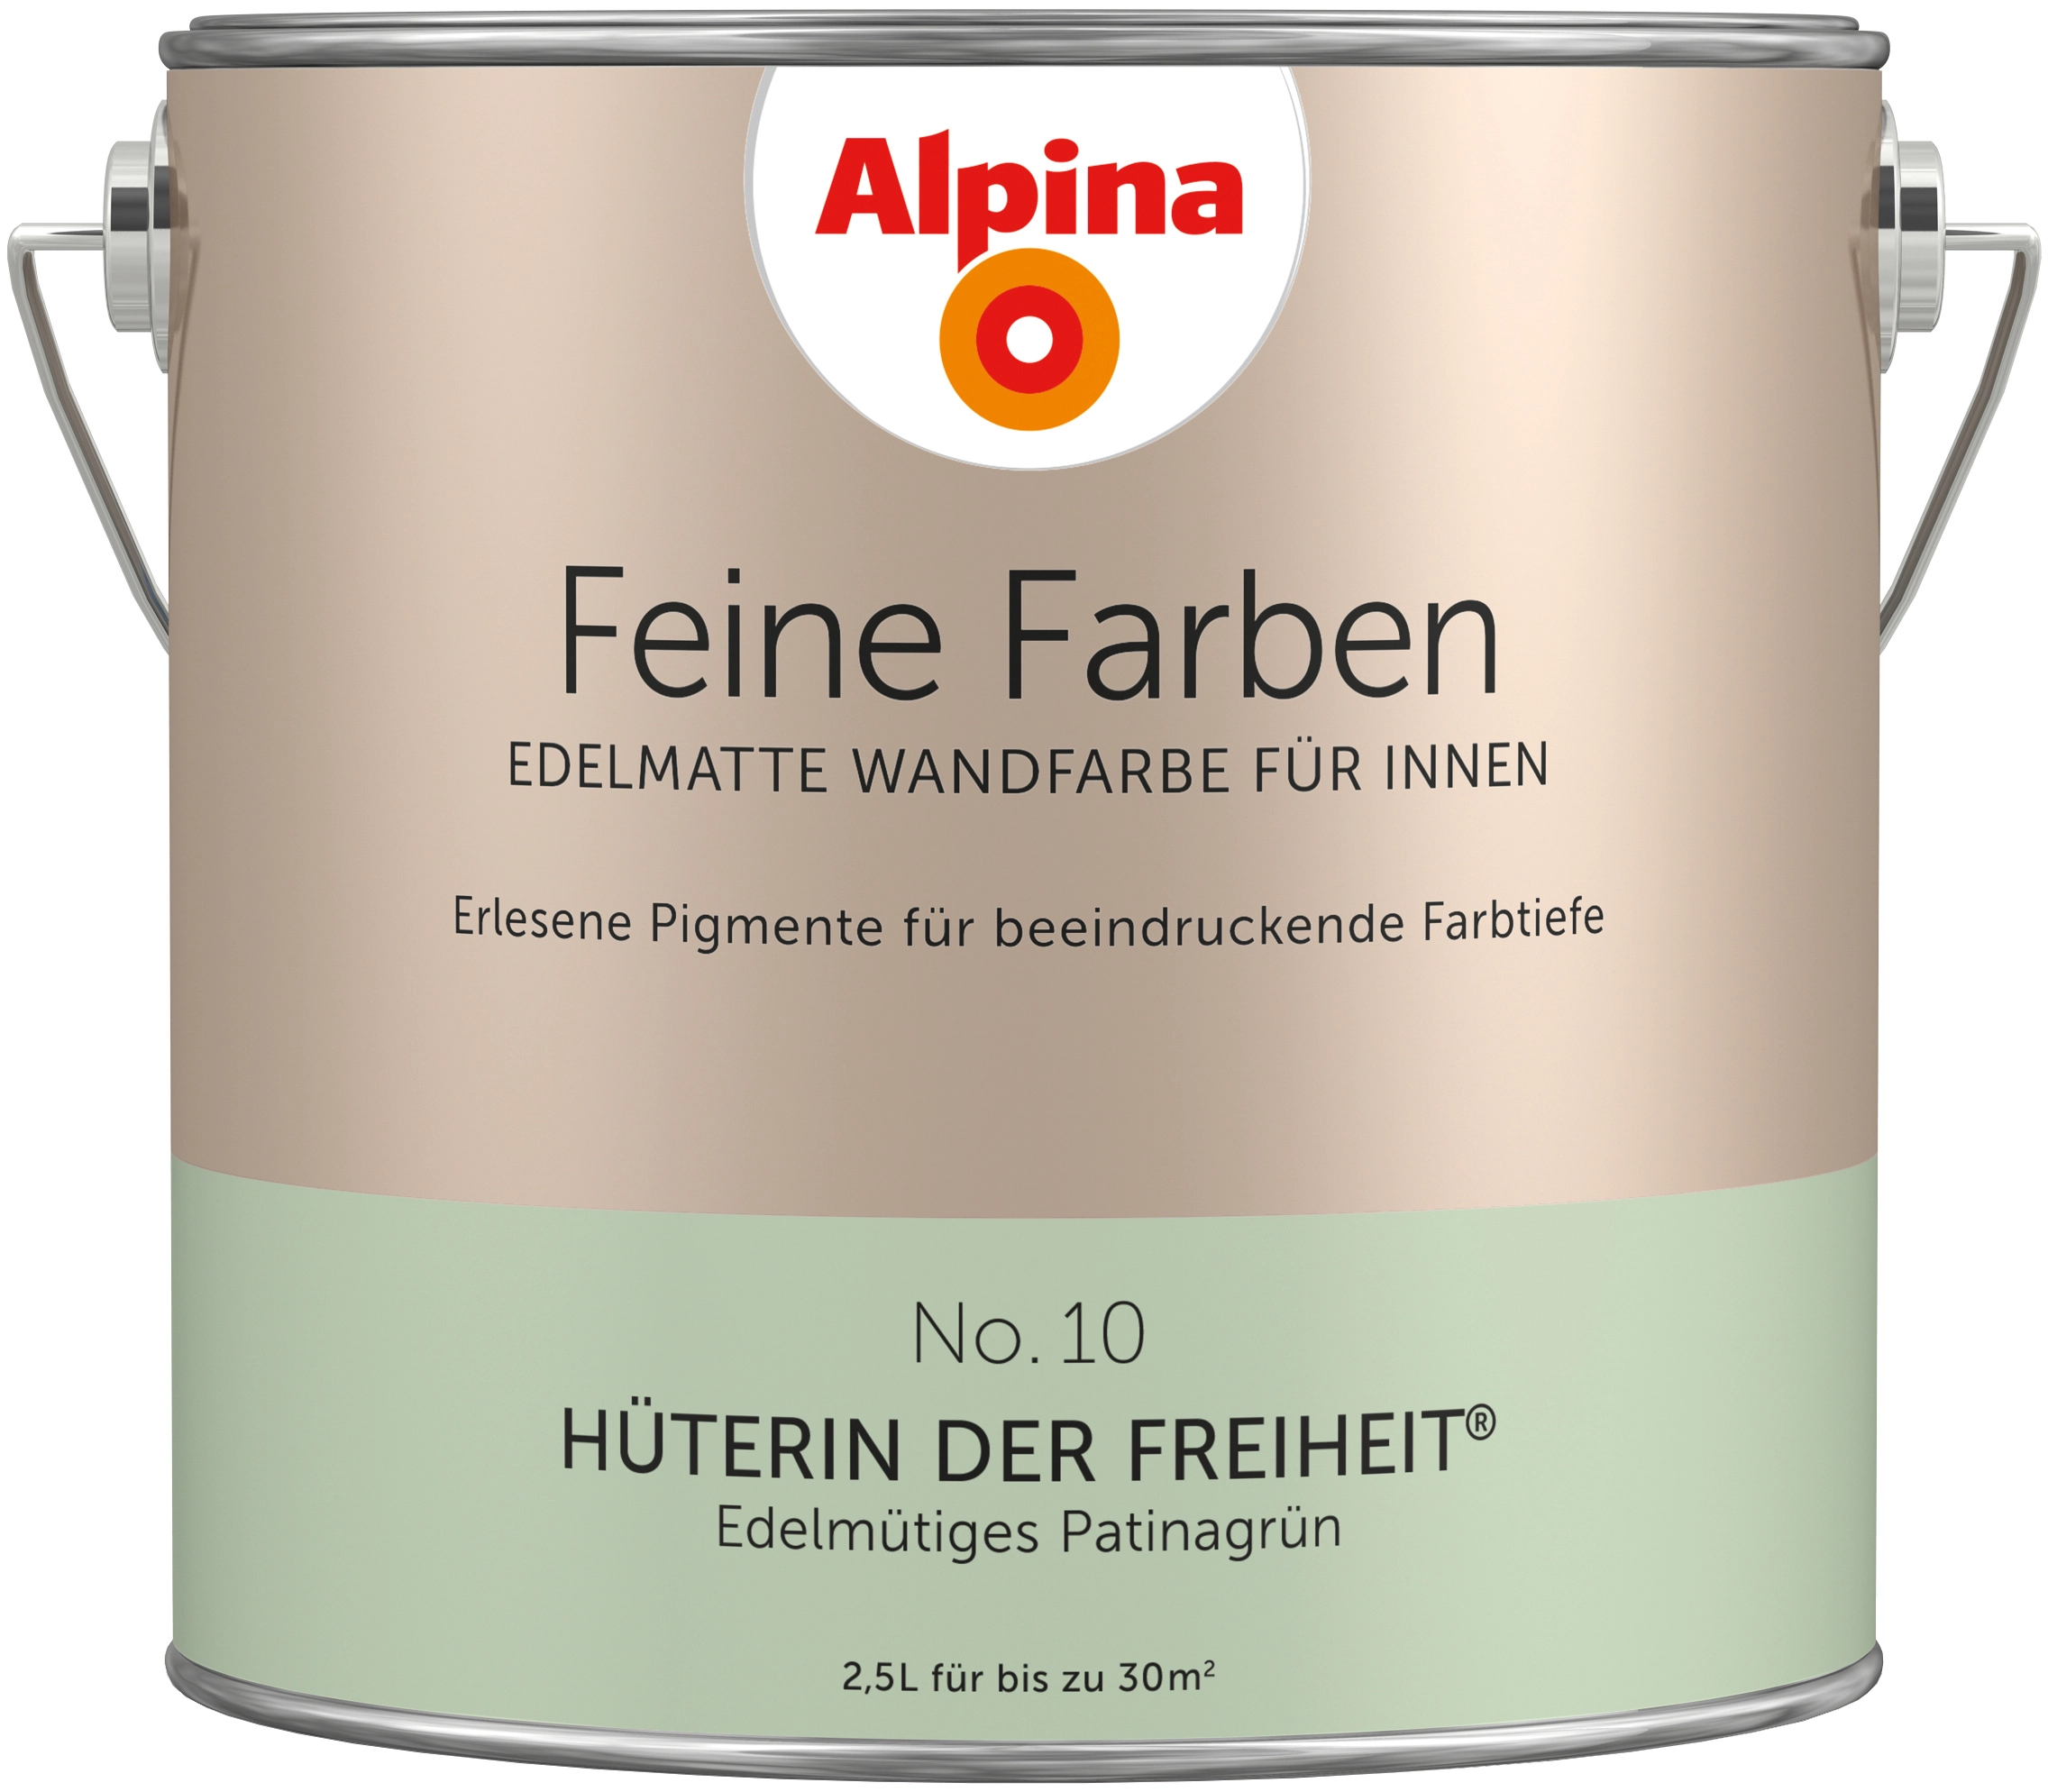 Alpina Feine Farben - Edelmatte Wandfarbe für Innen, alle Farbtöne